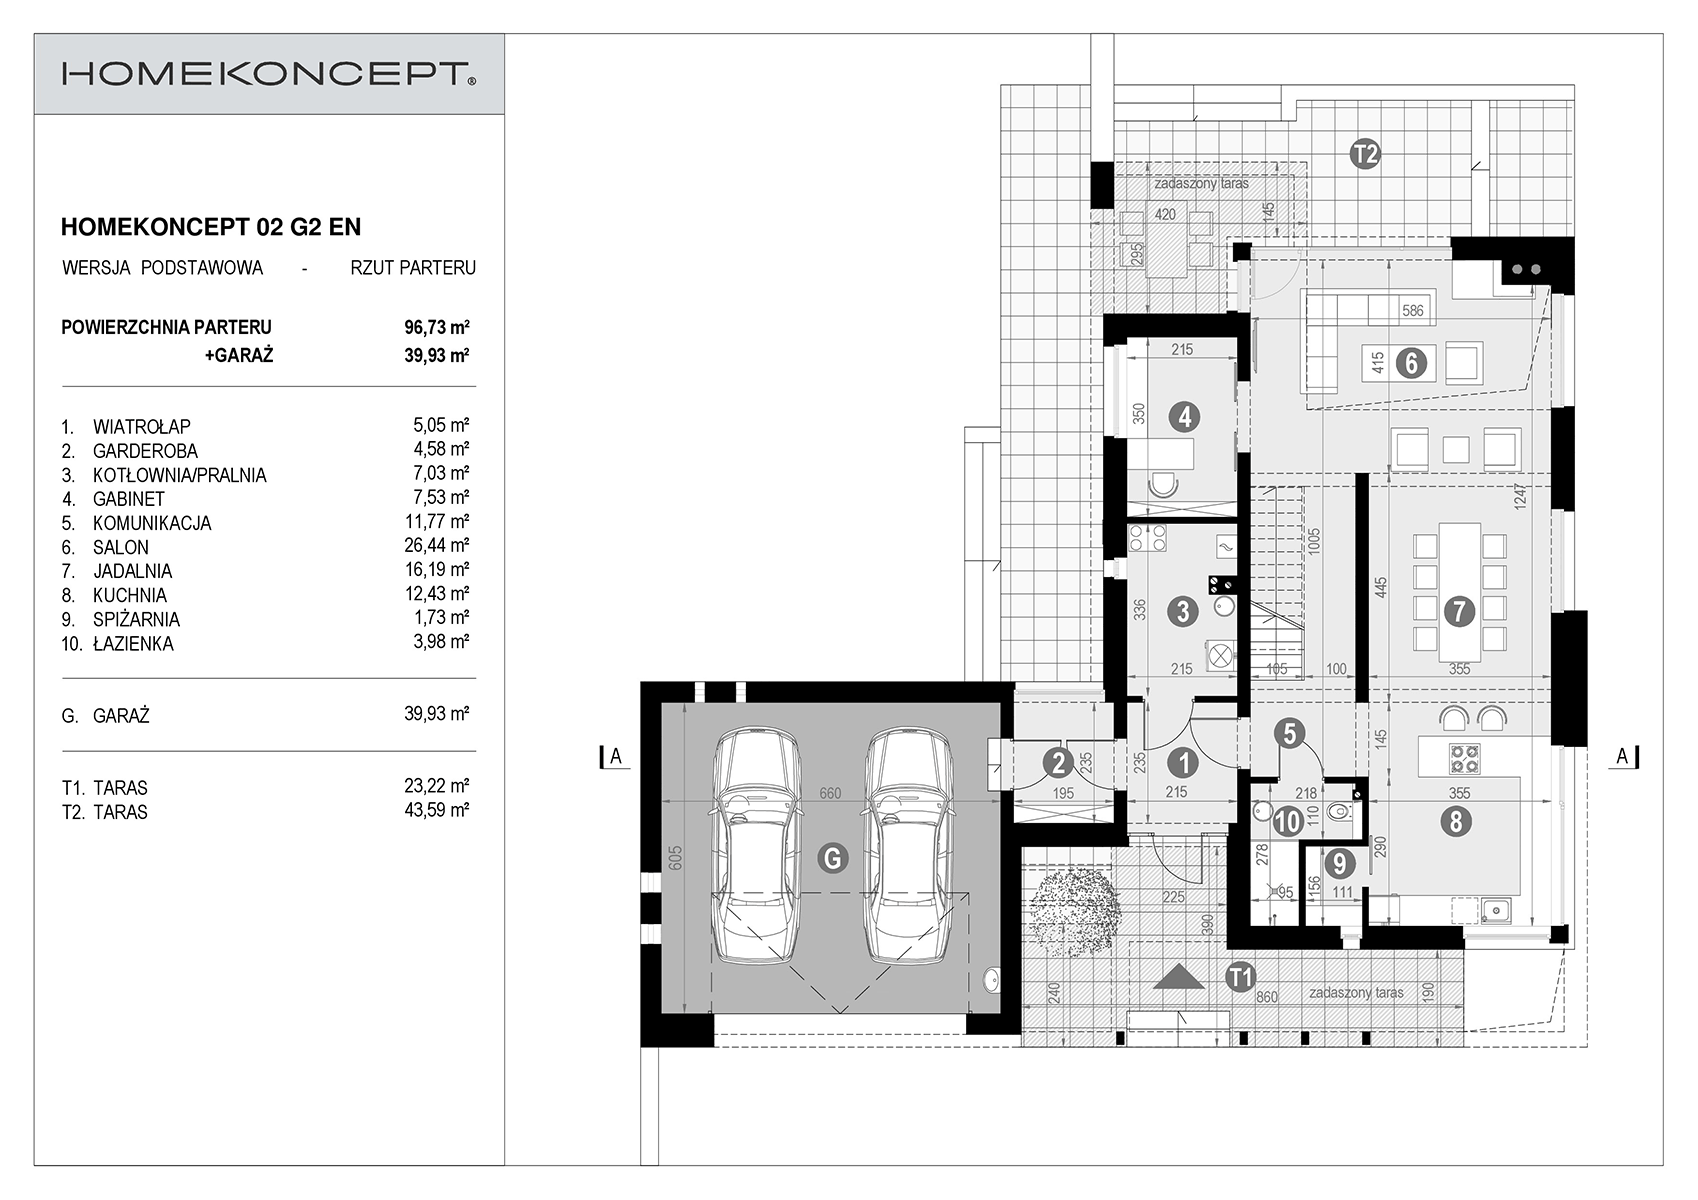 Układ pomieszczeń w gotowym projekcie domu HOMEKONCEPT 02 G2 EN z łazienką przy sypialni